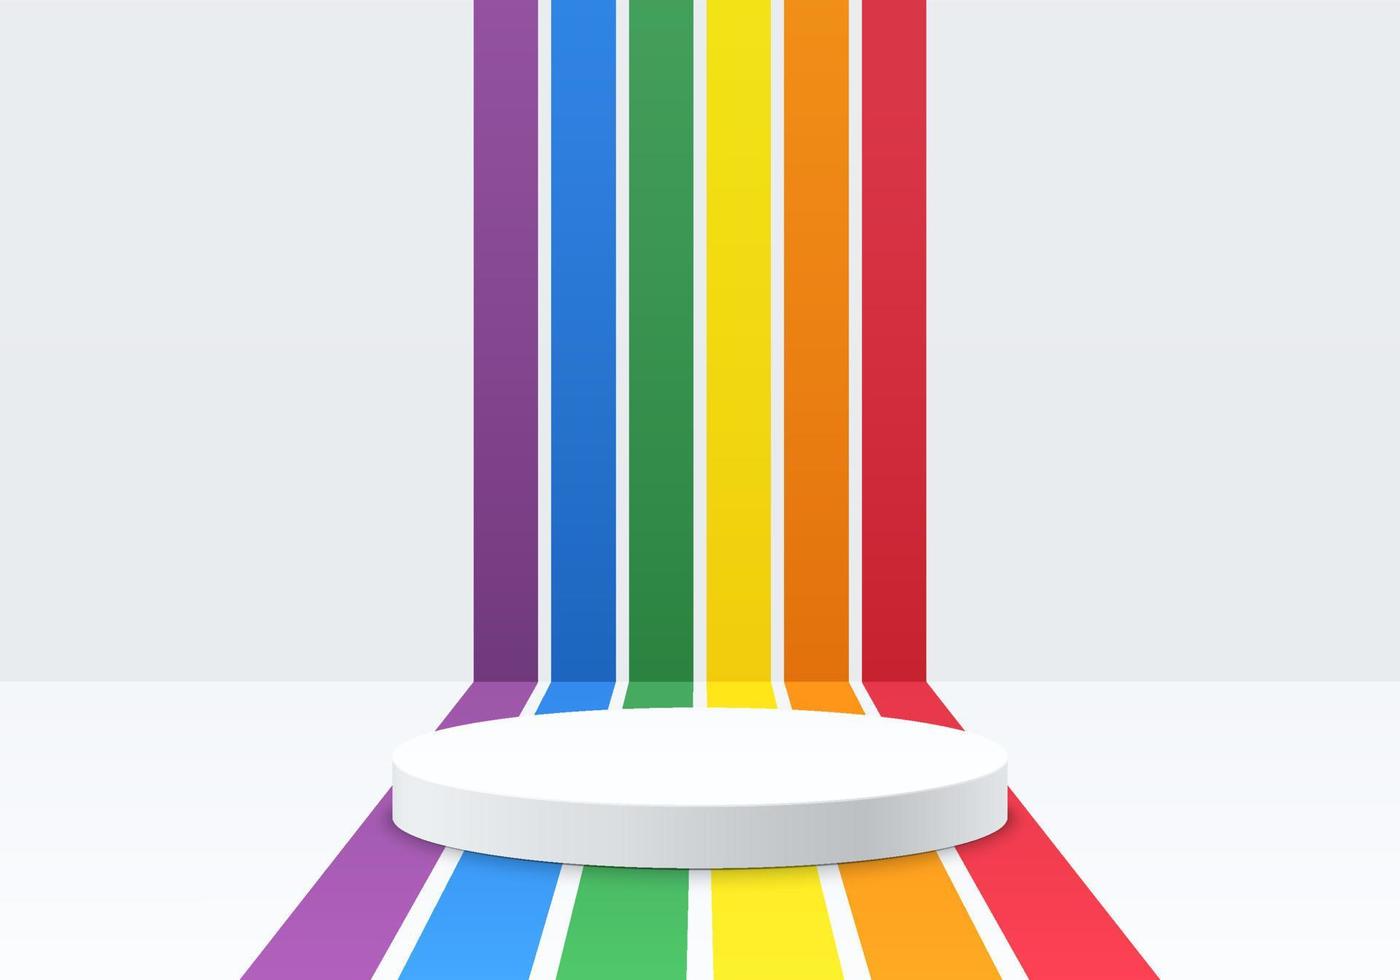 podio de pedestal de cilindro blanco realista con rayas de perspectiva en color arco iris. concepto lgbtq. escena mínima abstracta para productos de maqueta, escaparate de escenario, exhibición de promoción. formas geométricas vectoriales vector